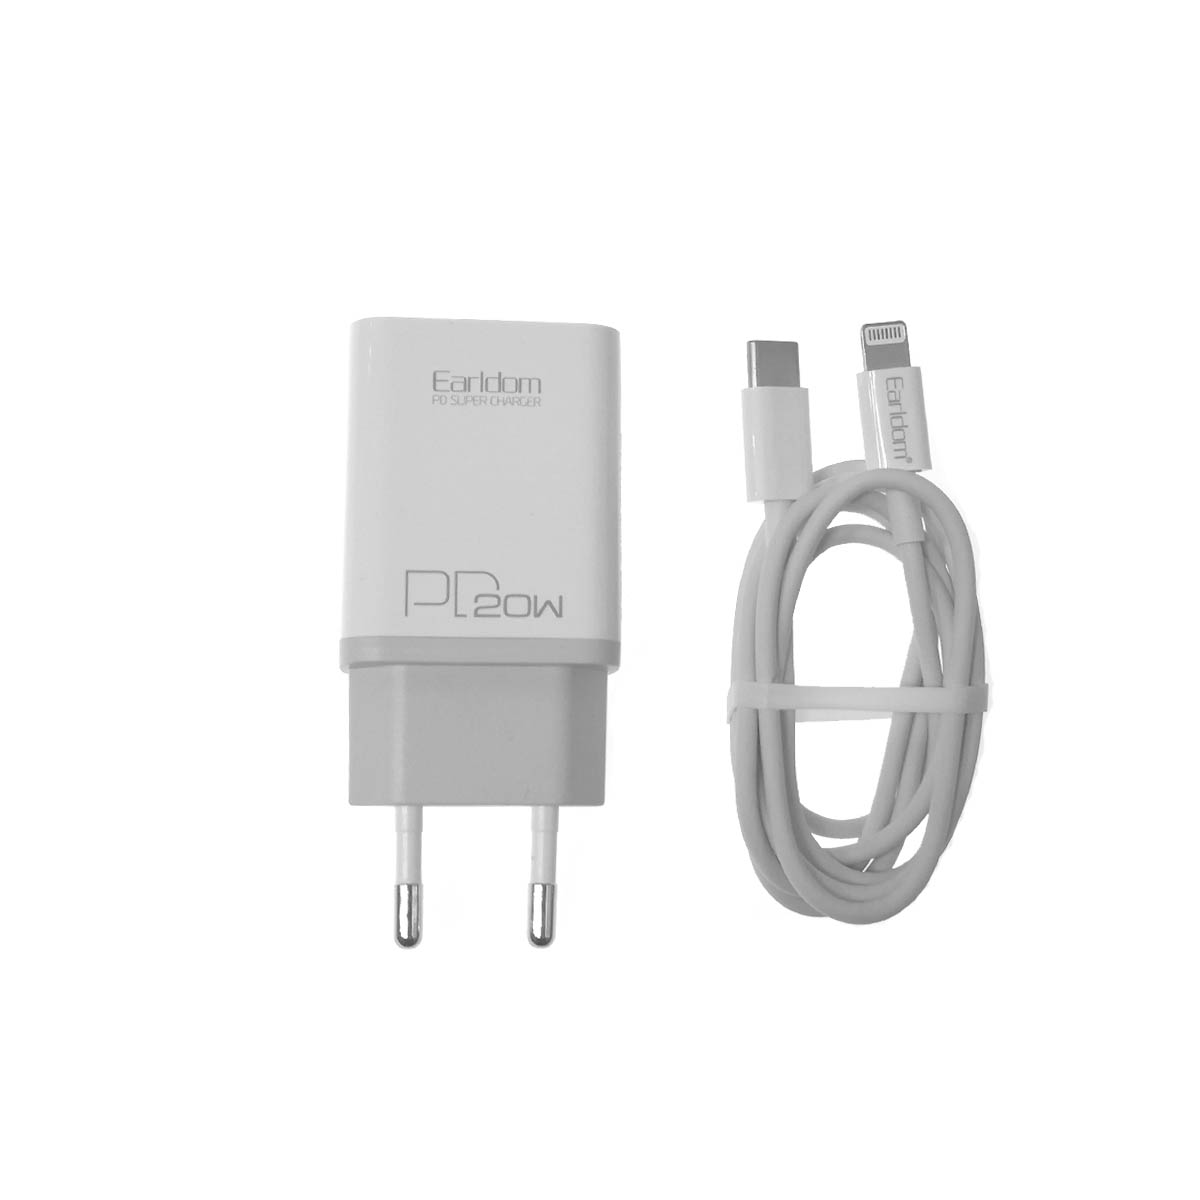 СЗУ (Сетевое зарядное устройство) EARLDOM ES-EU5 с кабелем USB Type C на Lightning 8 pin, 20W, длина 1 метр, цвет белый